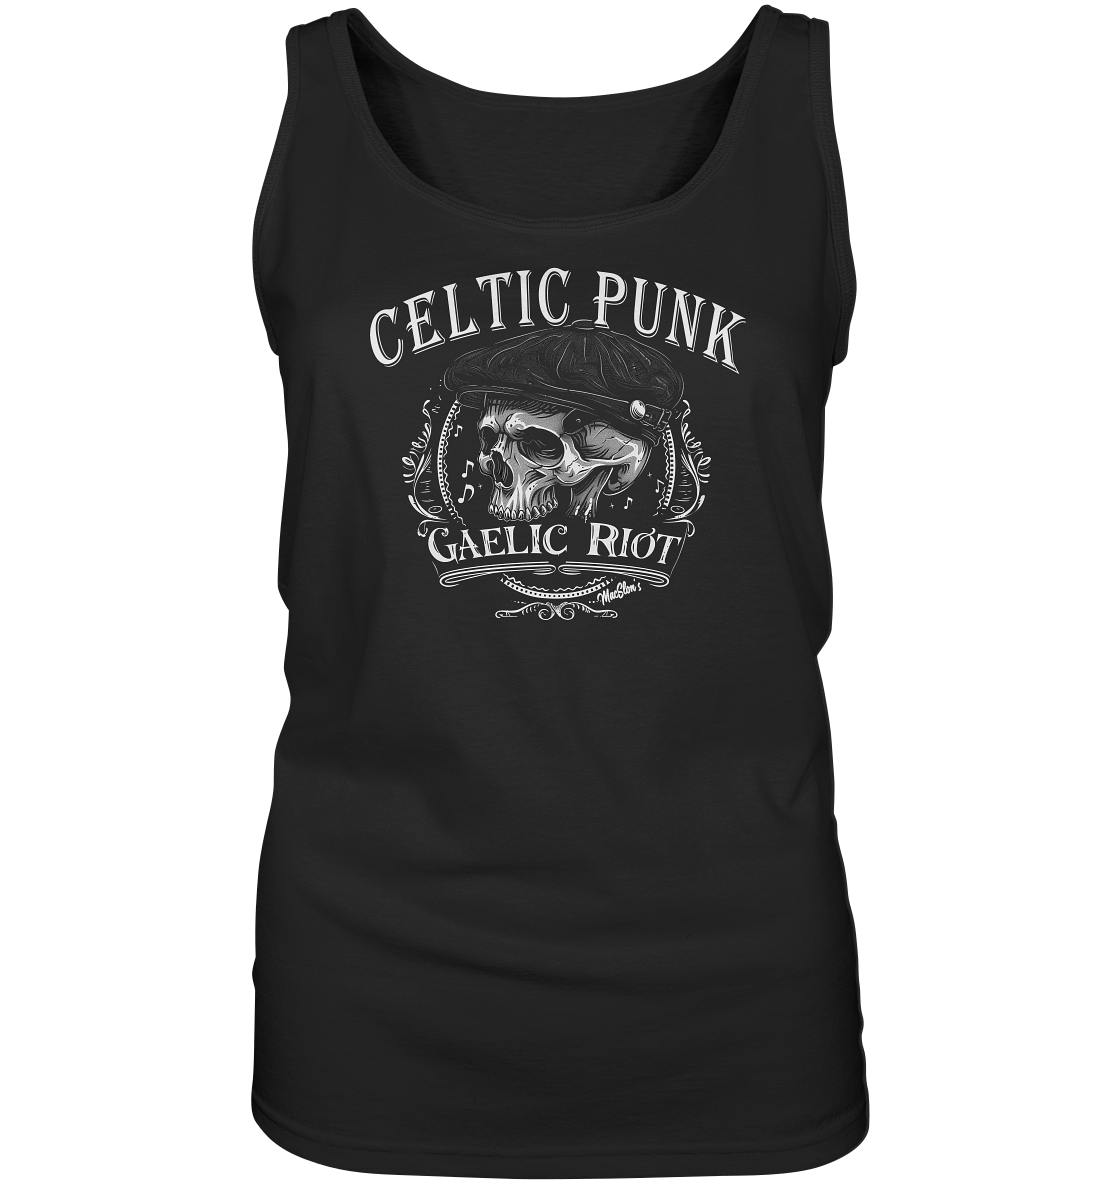 Celtic Punk "Gaelic Riot I" - Ladies Tank-Top